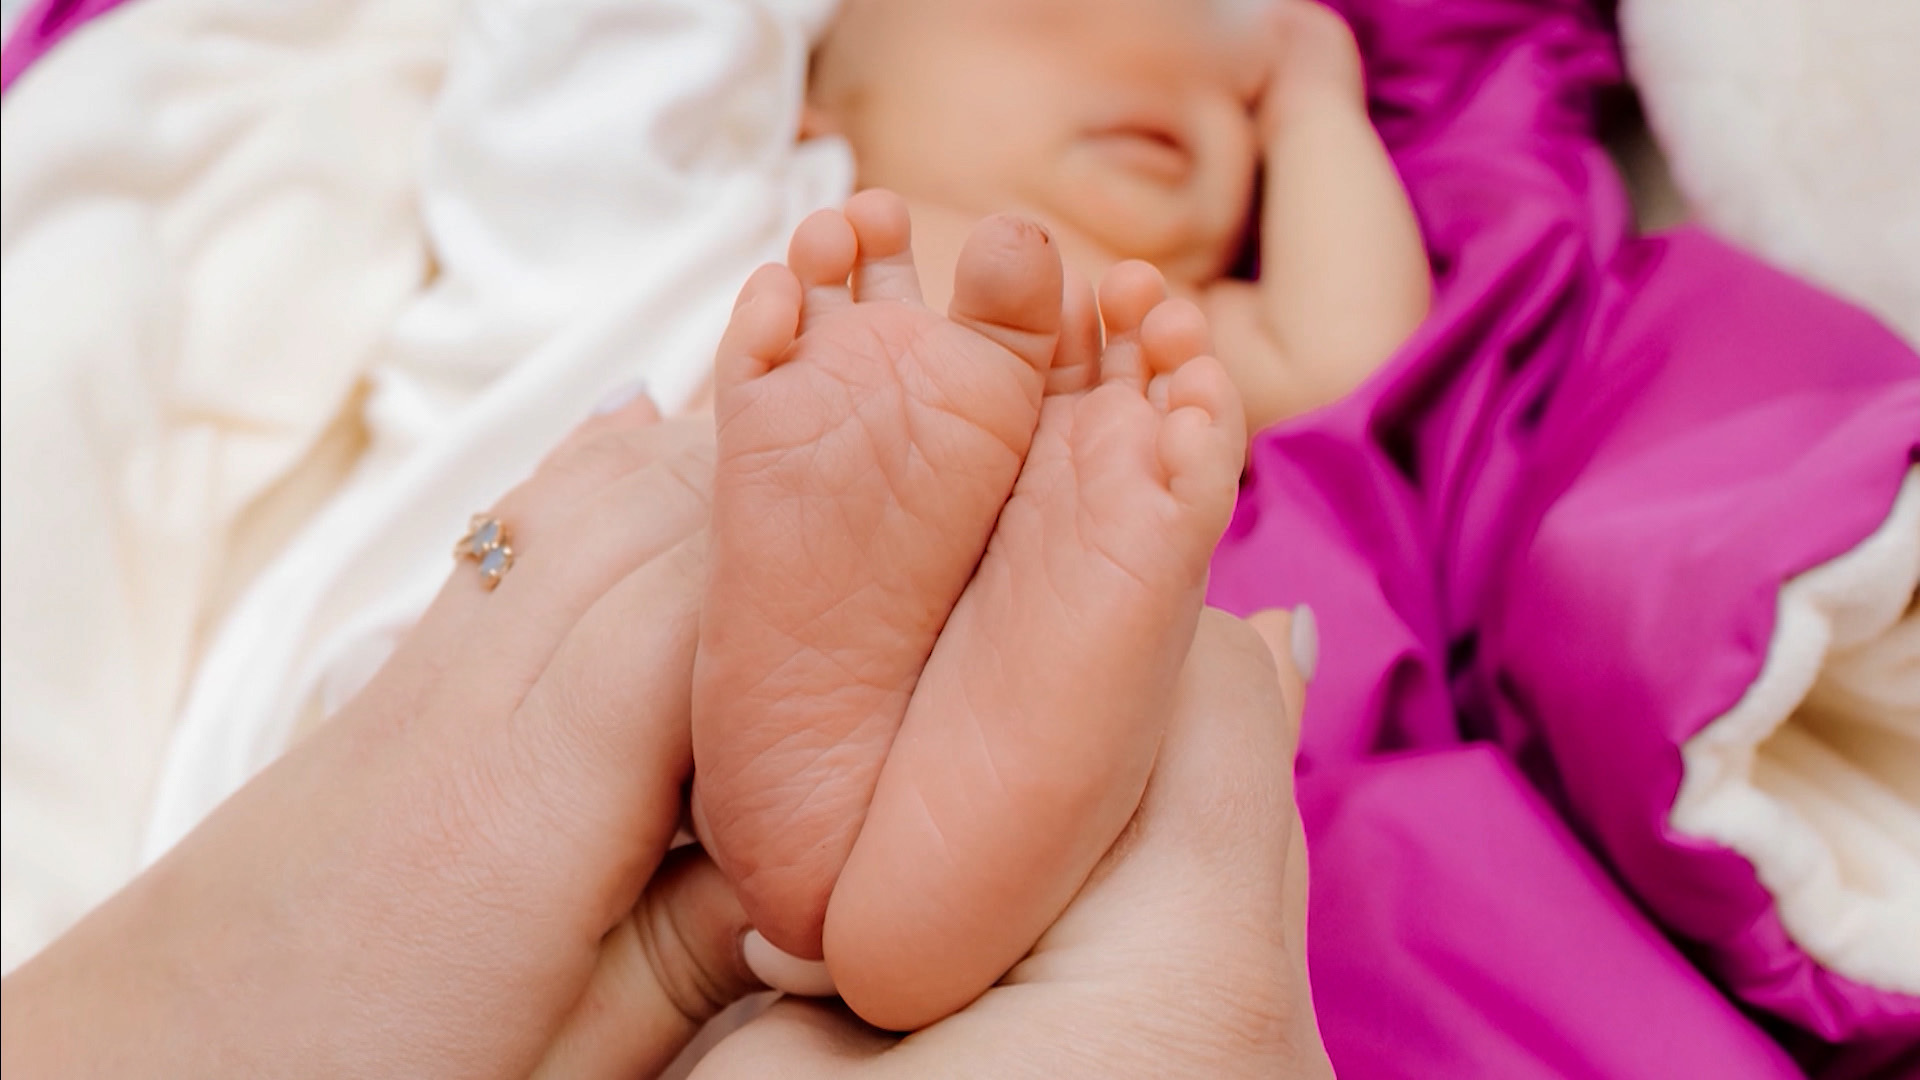 фото михалкова с новорожденной дочкой